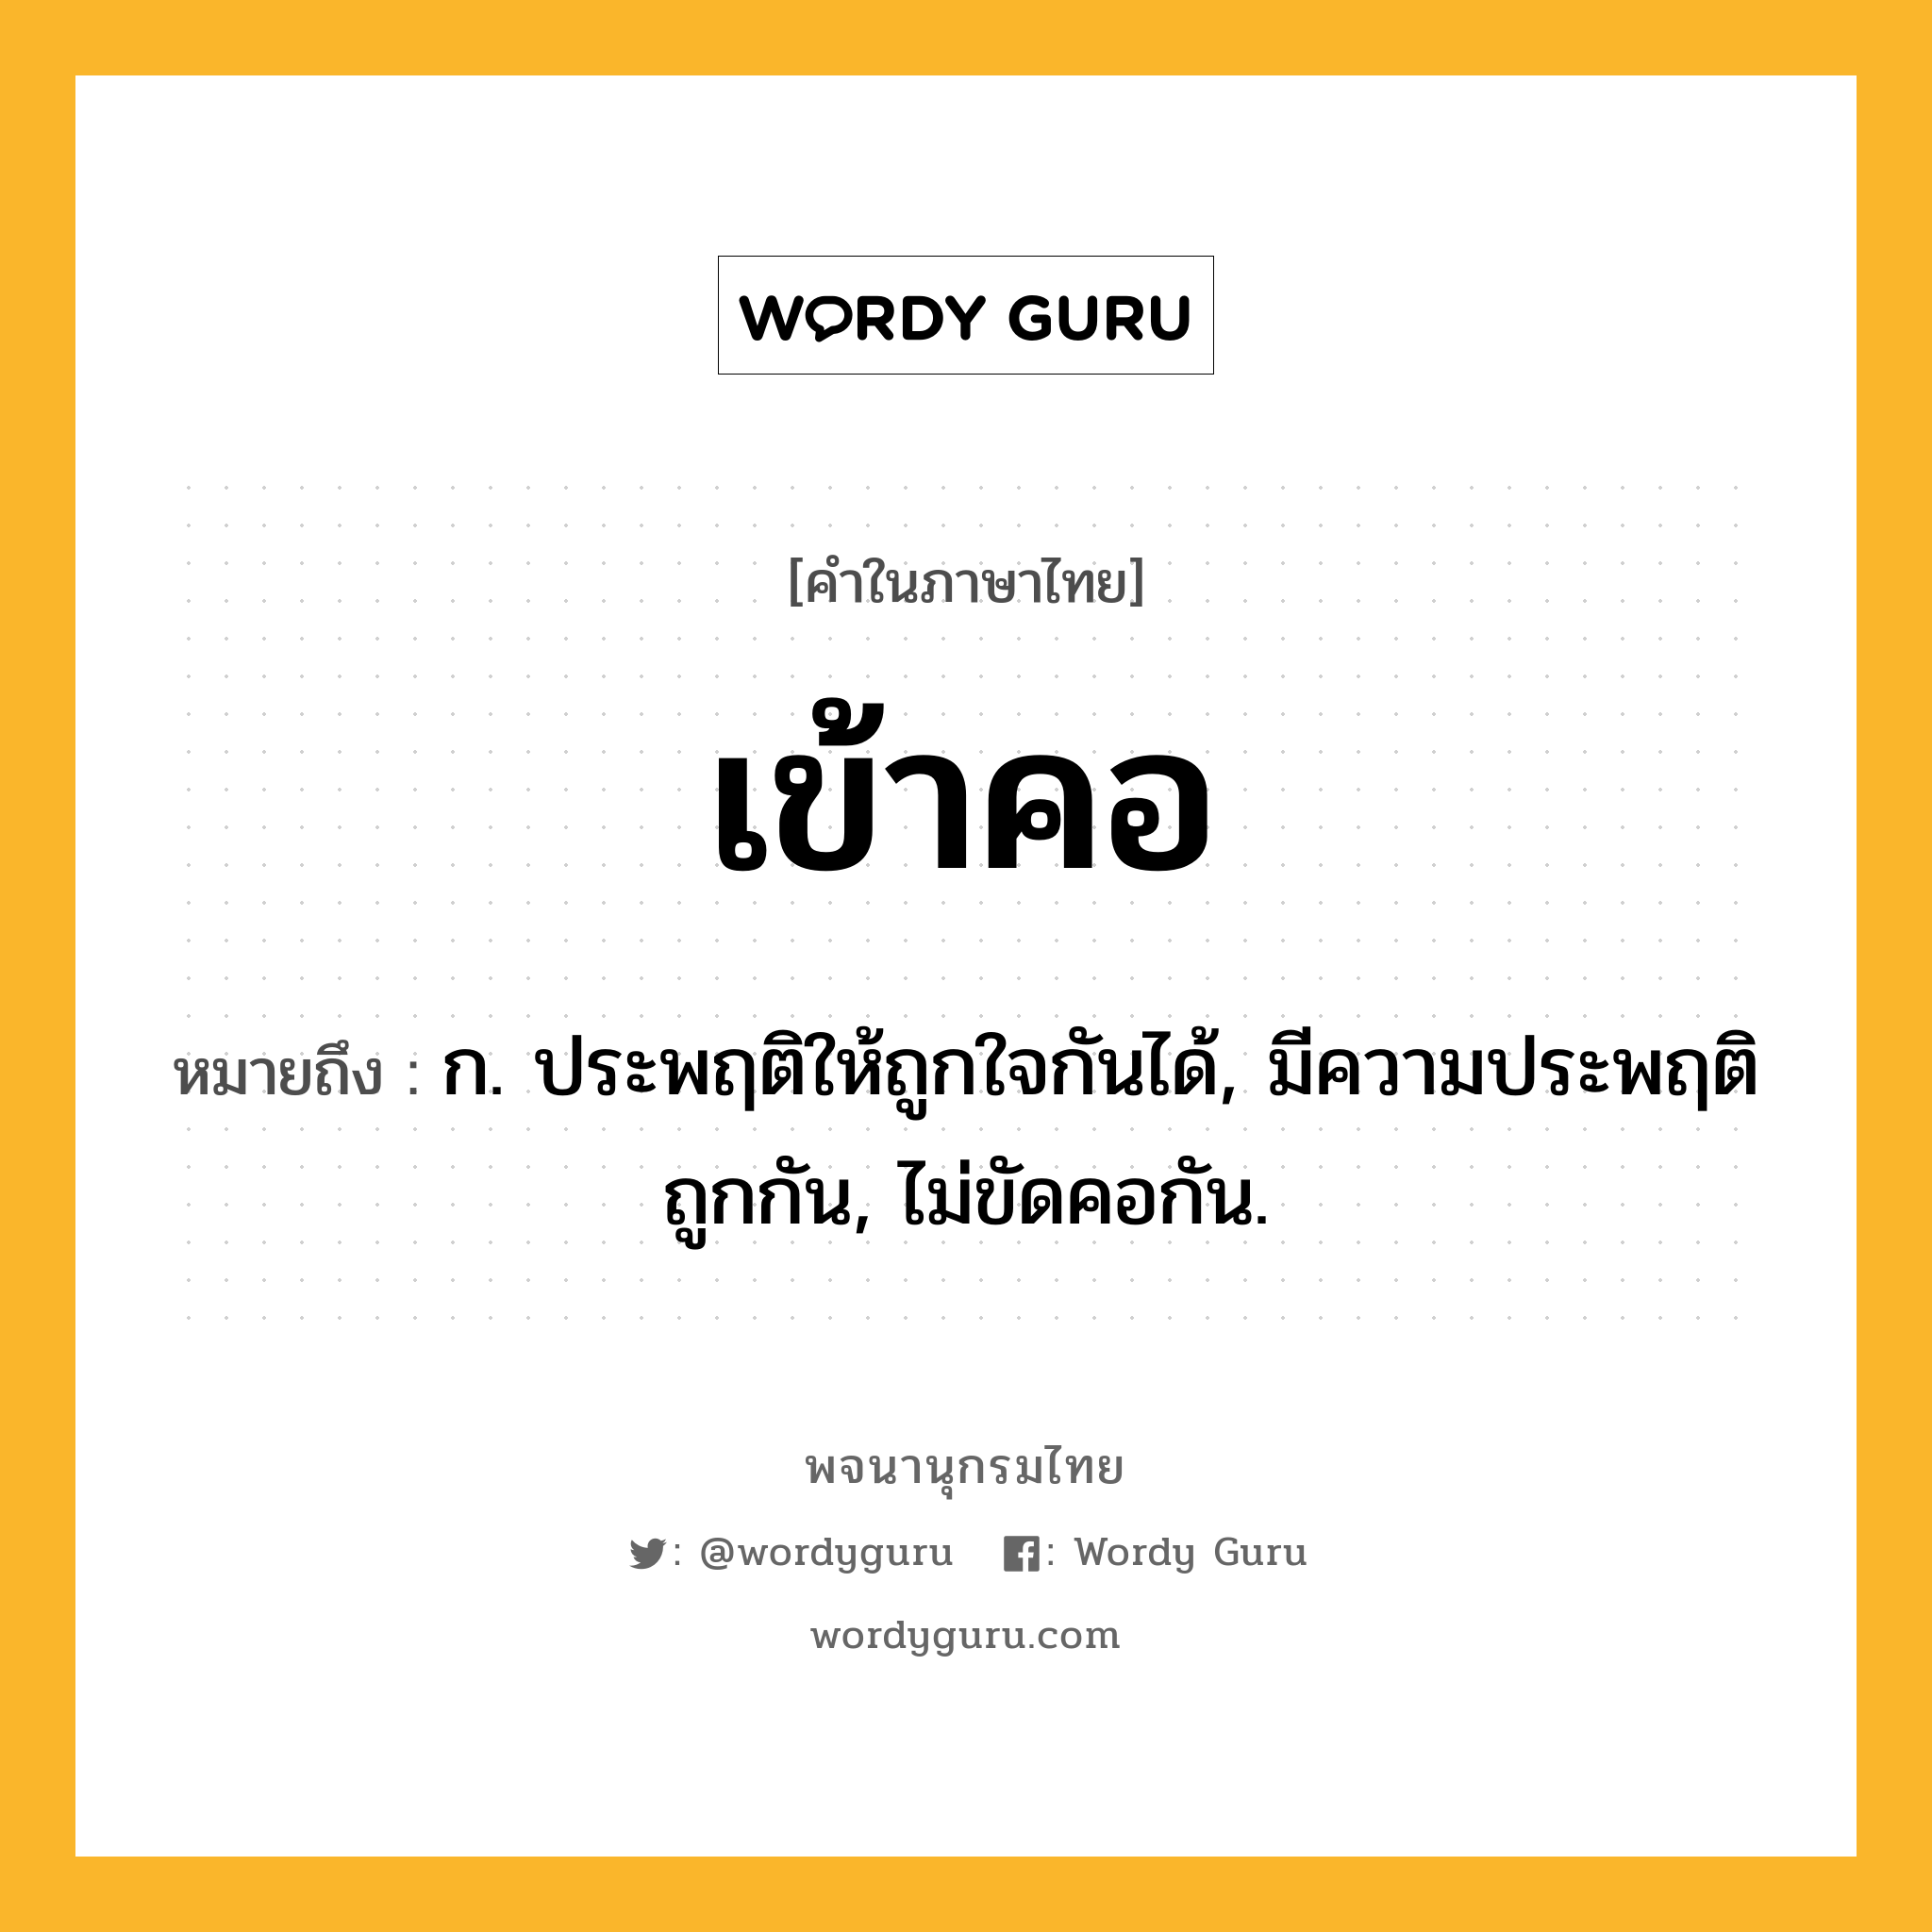 เข้าคอ หมายถึงอะไร?, คำในภาษาไทย เข้าคอ หมายถึง ก. ประพฤติให้ถูกใจกันได้, มีความประพฤติถูกกัน, ไม่ขัดคอกัน.